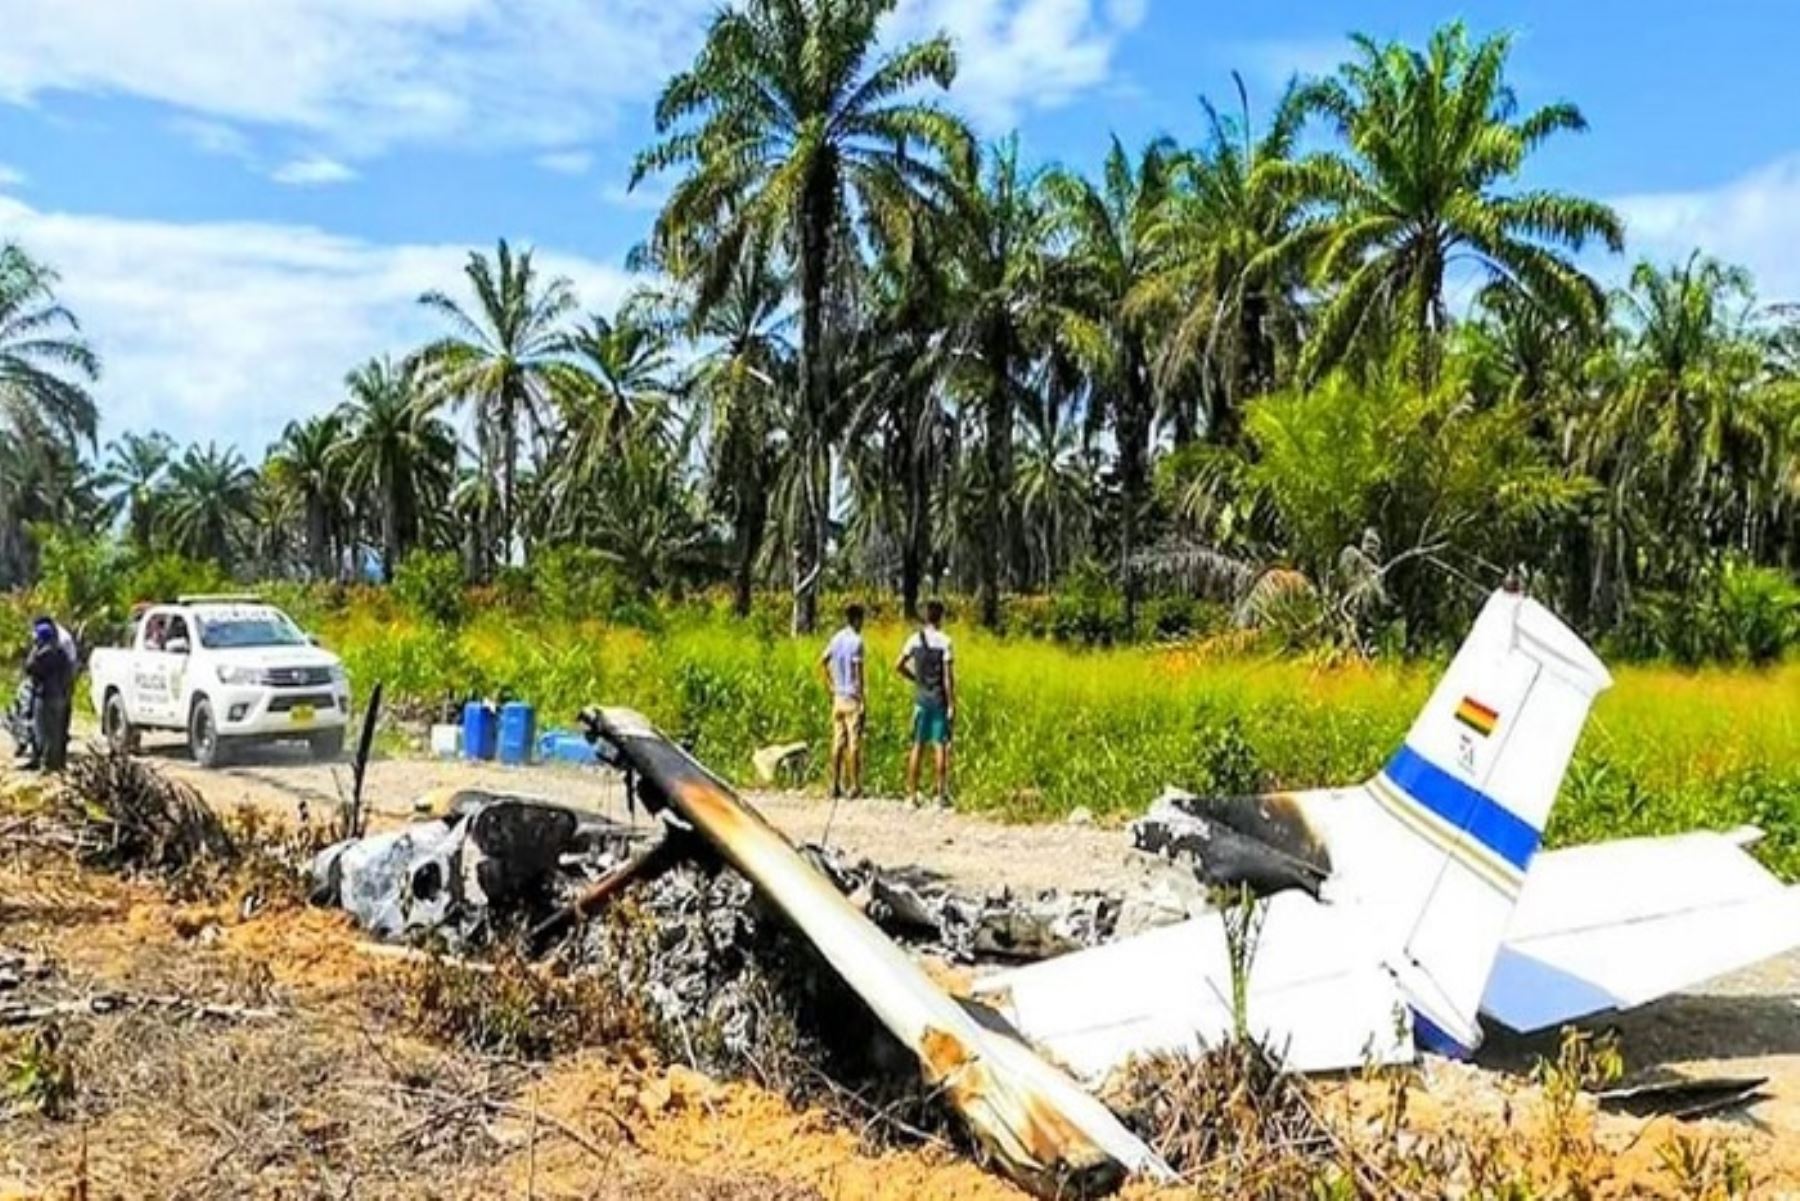 Una avioneta marca Cessna, con bandera y matrícula boliviana, fue hallada quemada esta tarde en la carretera del Alto Huallaga, en el distrito de Pólvora, cerca al centro poblado de Chachuayaku a 25 minutos al norte de la ciudad de Tocache, en el sur de la región San Martín. Foto: Maykol tv